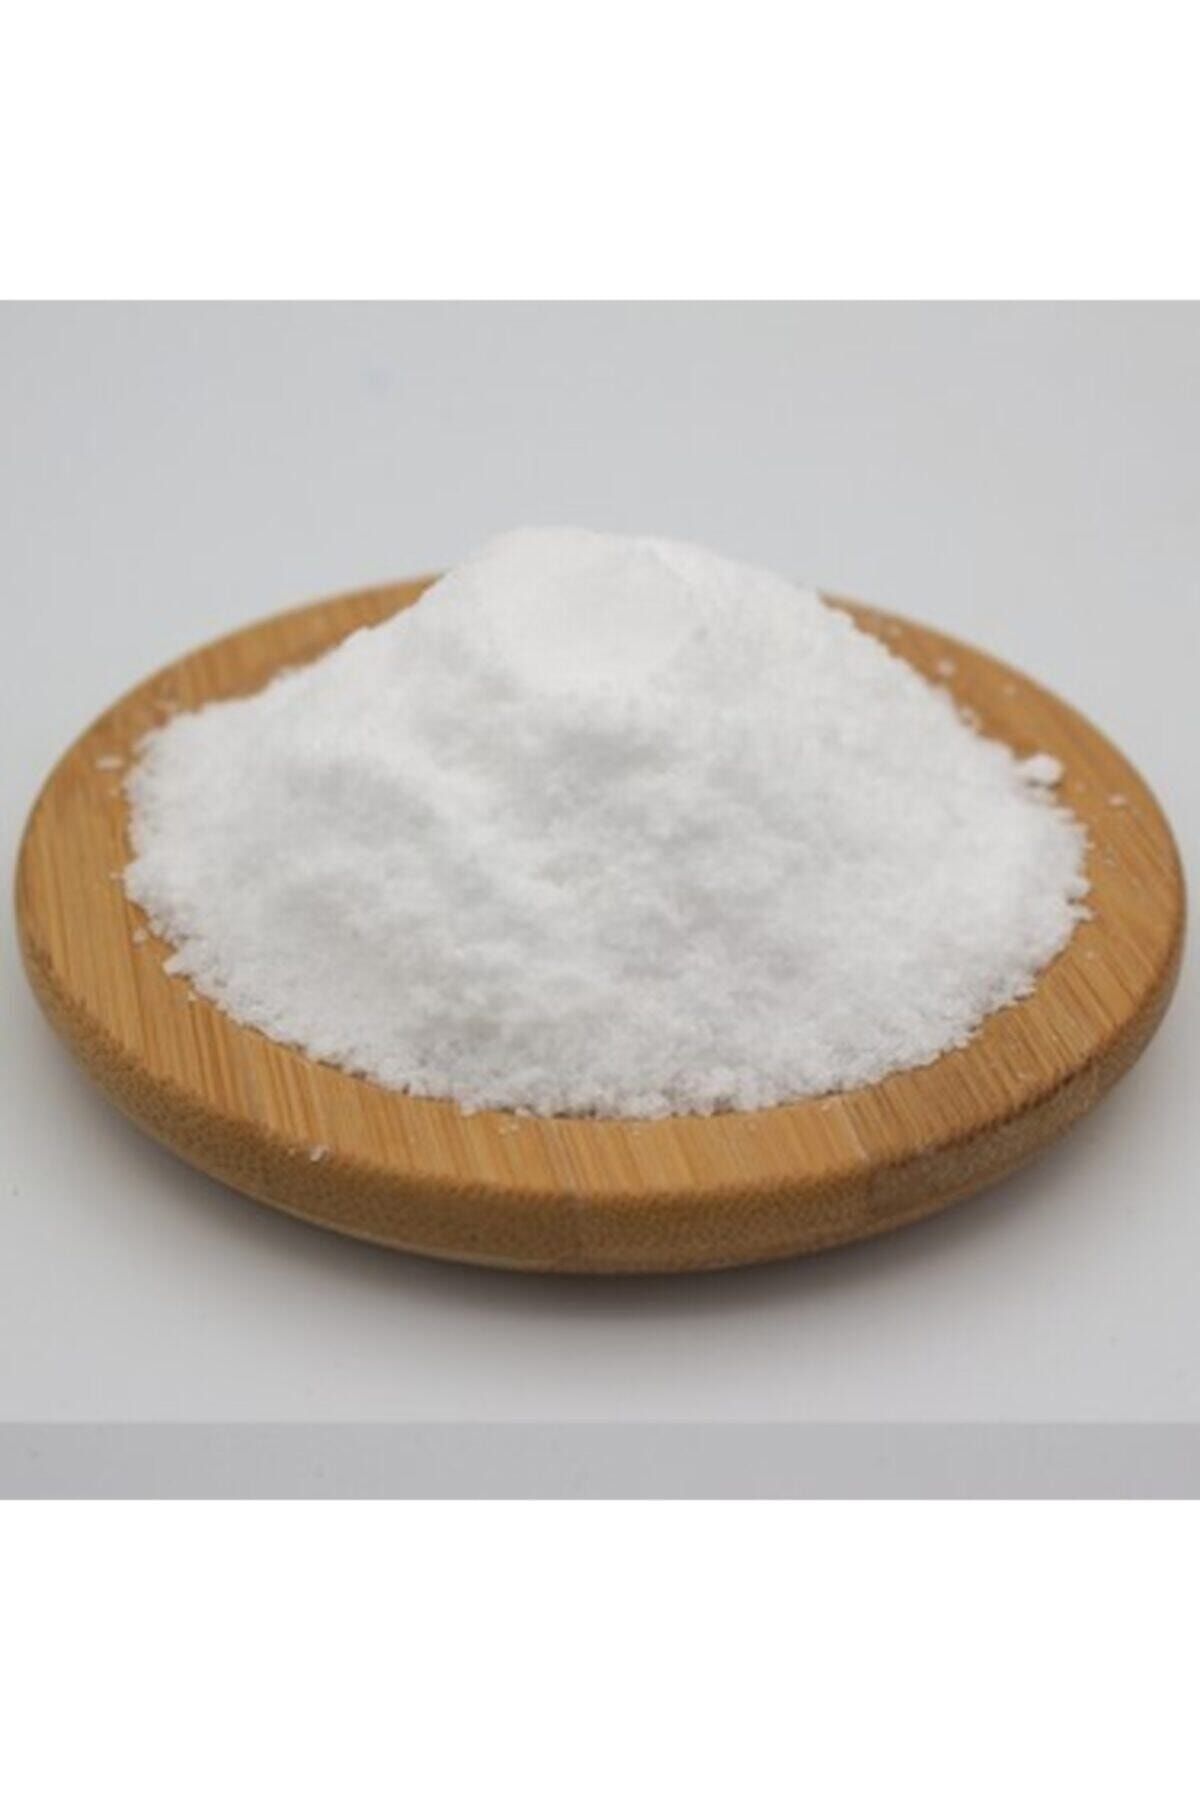 Kimyacınız Sodyum Bikarbonat - Yemek Sodası - Karbonat 1 Kg, Gıda Karbonatı, Besin Karbonatı, Kabartma Tozu